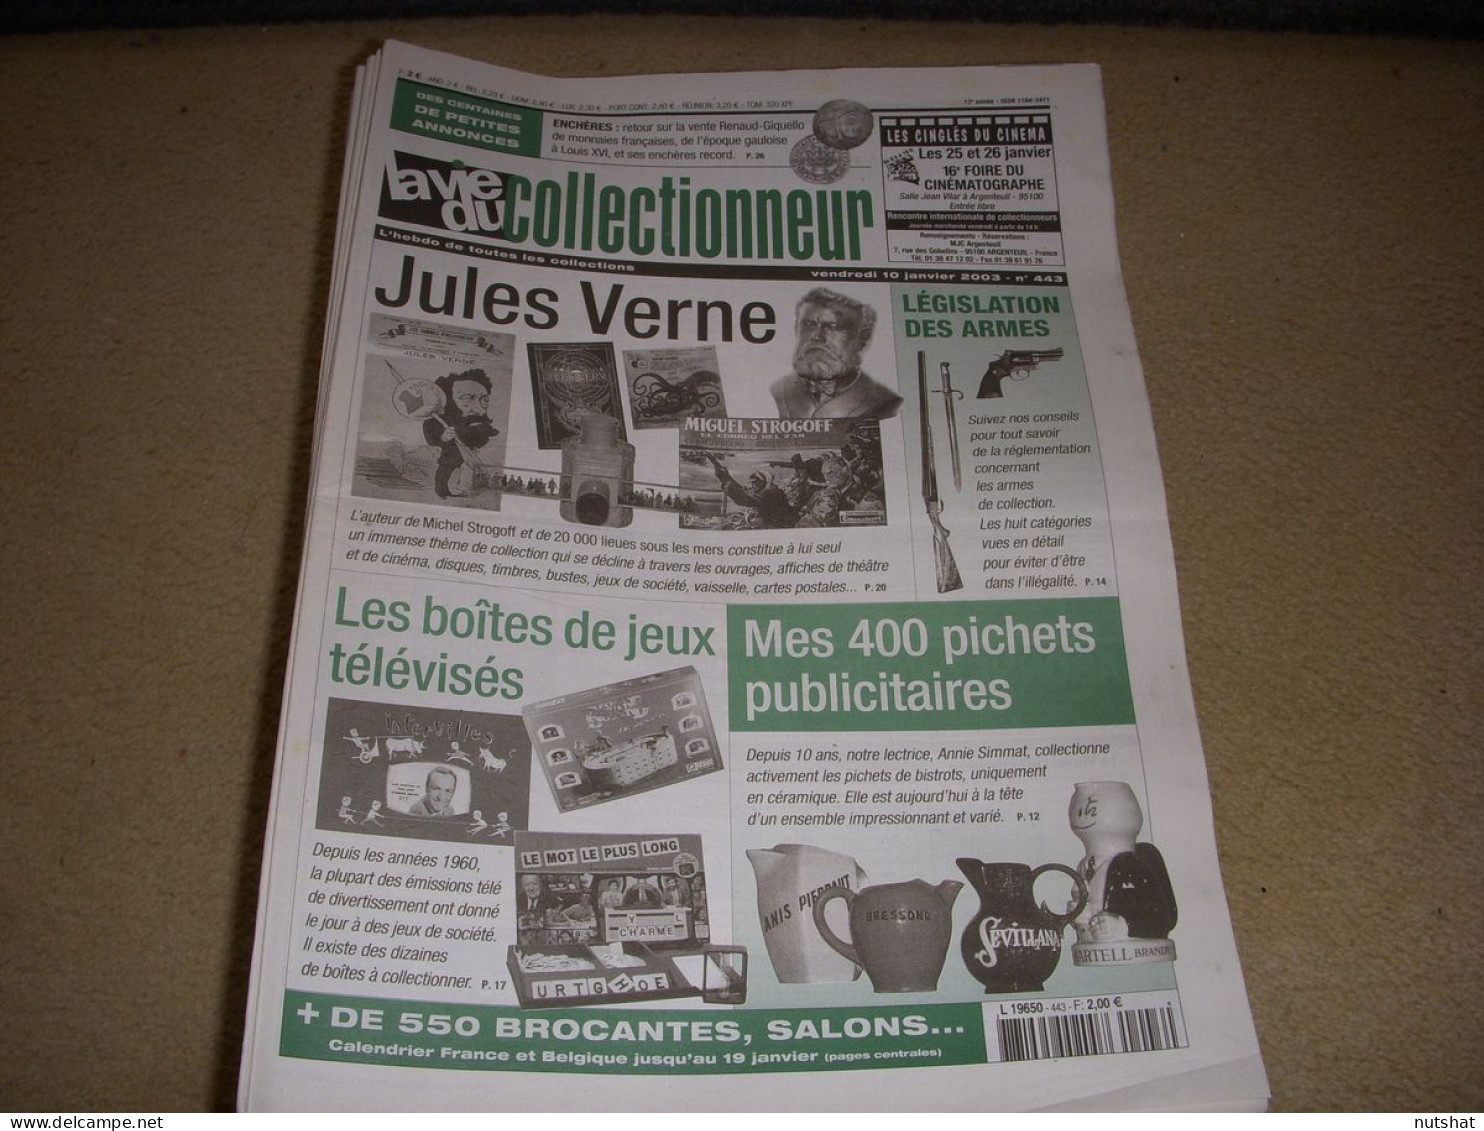 LVC VIE Du COLLECTIONNEUR 443 01.2003 JULES VERNE JEUX TELEVISES PICHETS SHEILA  - Brocantes & Collections